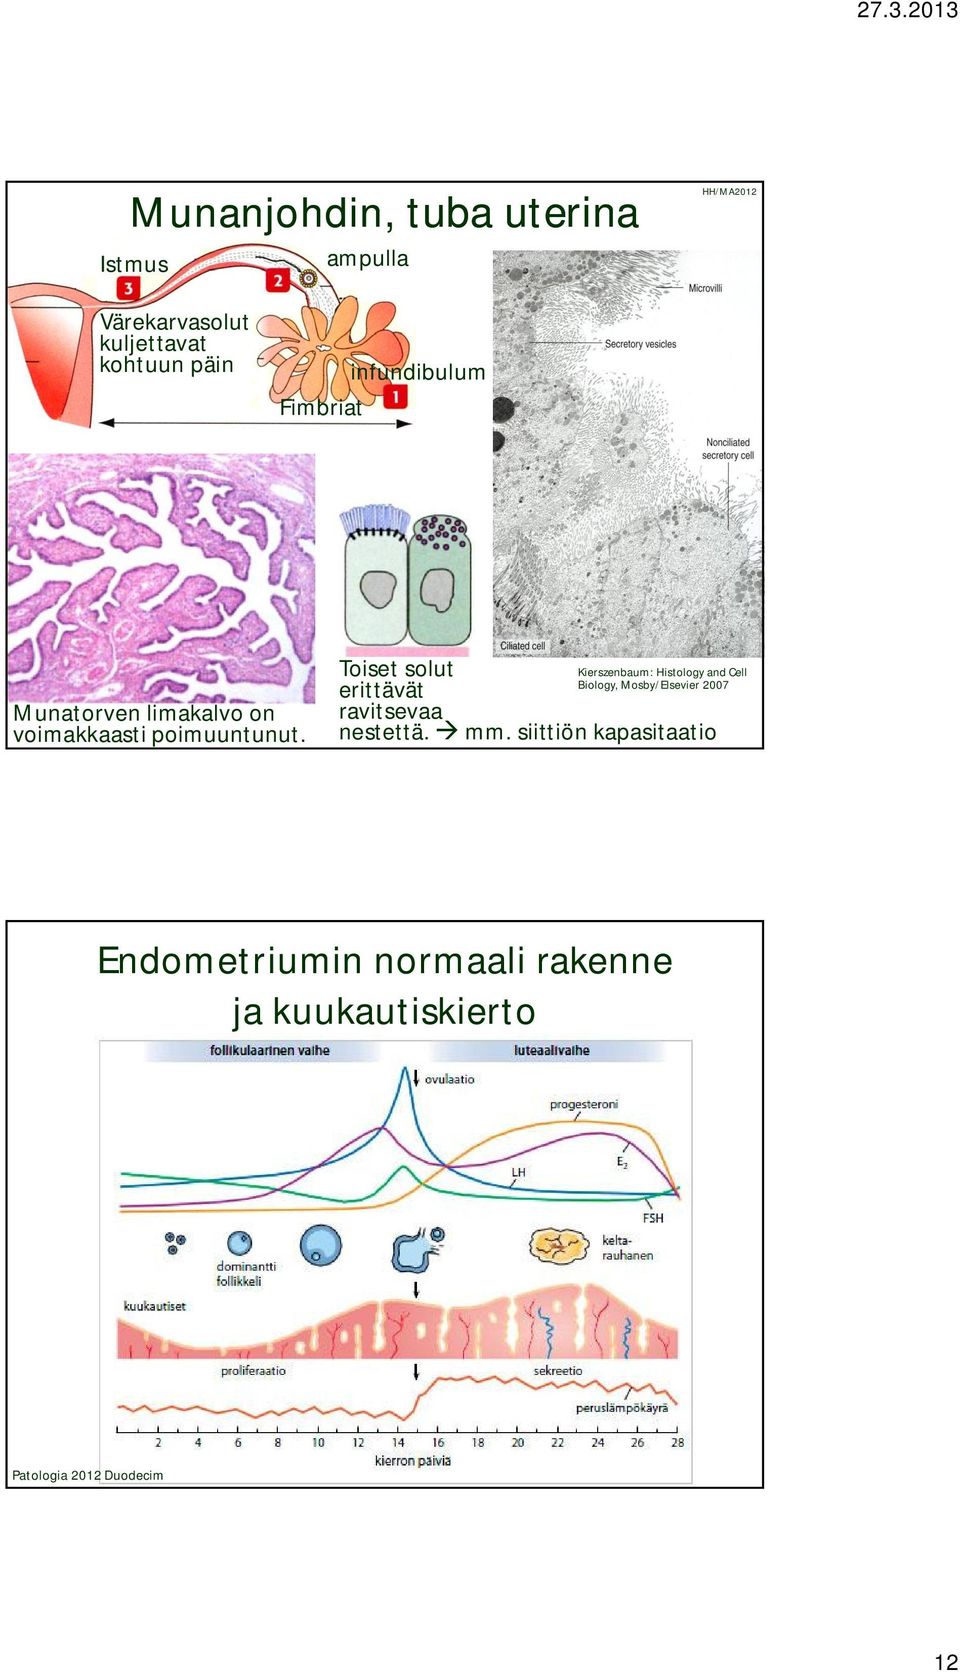 Toiset solut erittävät ravitsevaa nestettä. Biology, Mosby/Elsevier 2007 mm.